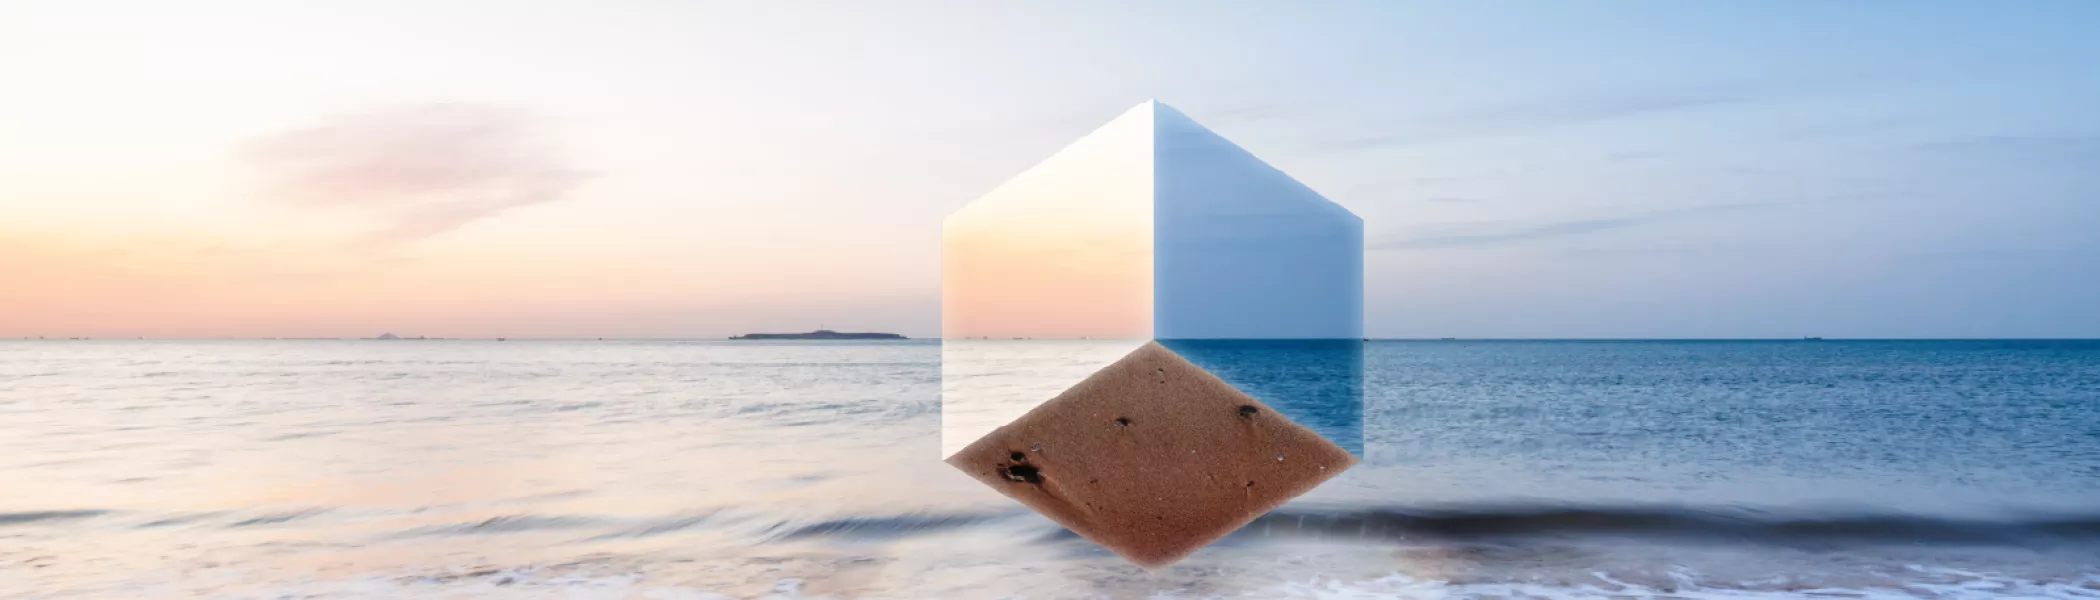 cube on beach header banner